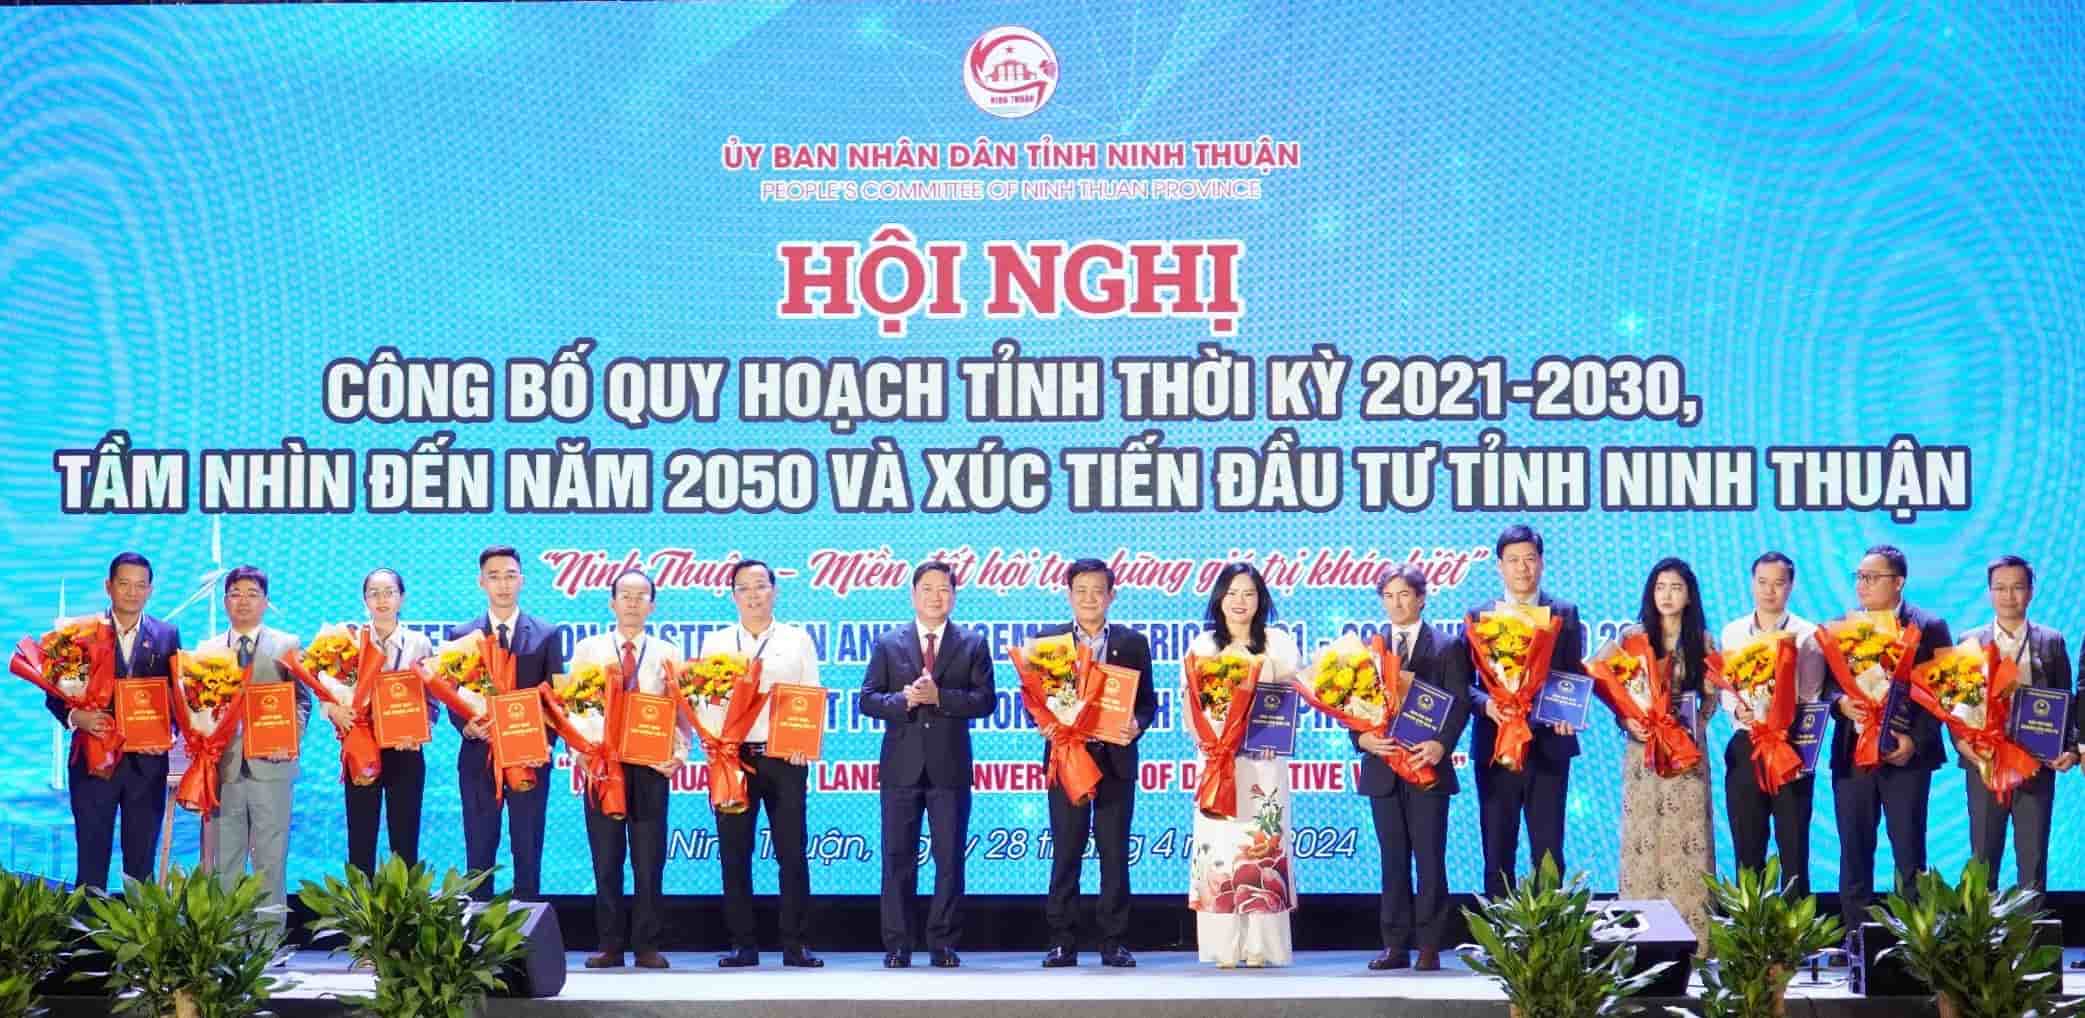 Tỉnh Ninh Thuận đã trao bản ghi nhớ, chứng nhận cho các nhà đầu tư, doanh nghiệp triển khai 15 dự án. Ảnh: Hữu Long